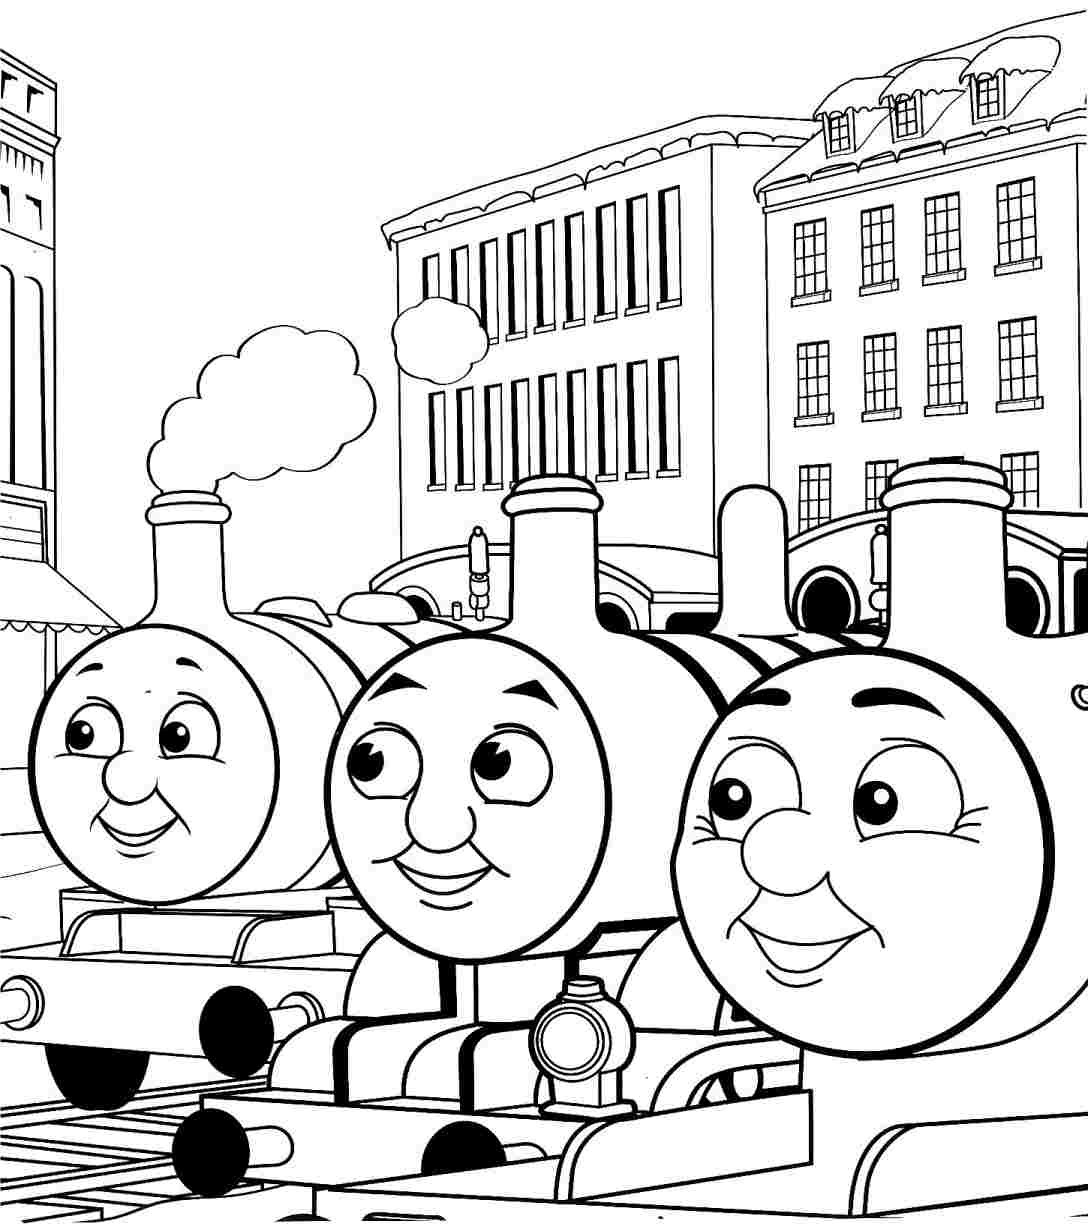 Thomas The Train Coloring Pages
 Cumpleaños con el tren Thomas y sus amigos